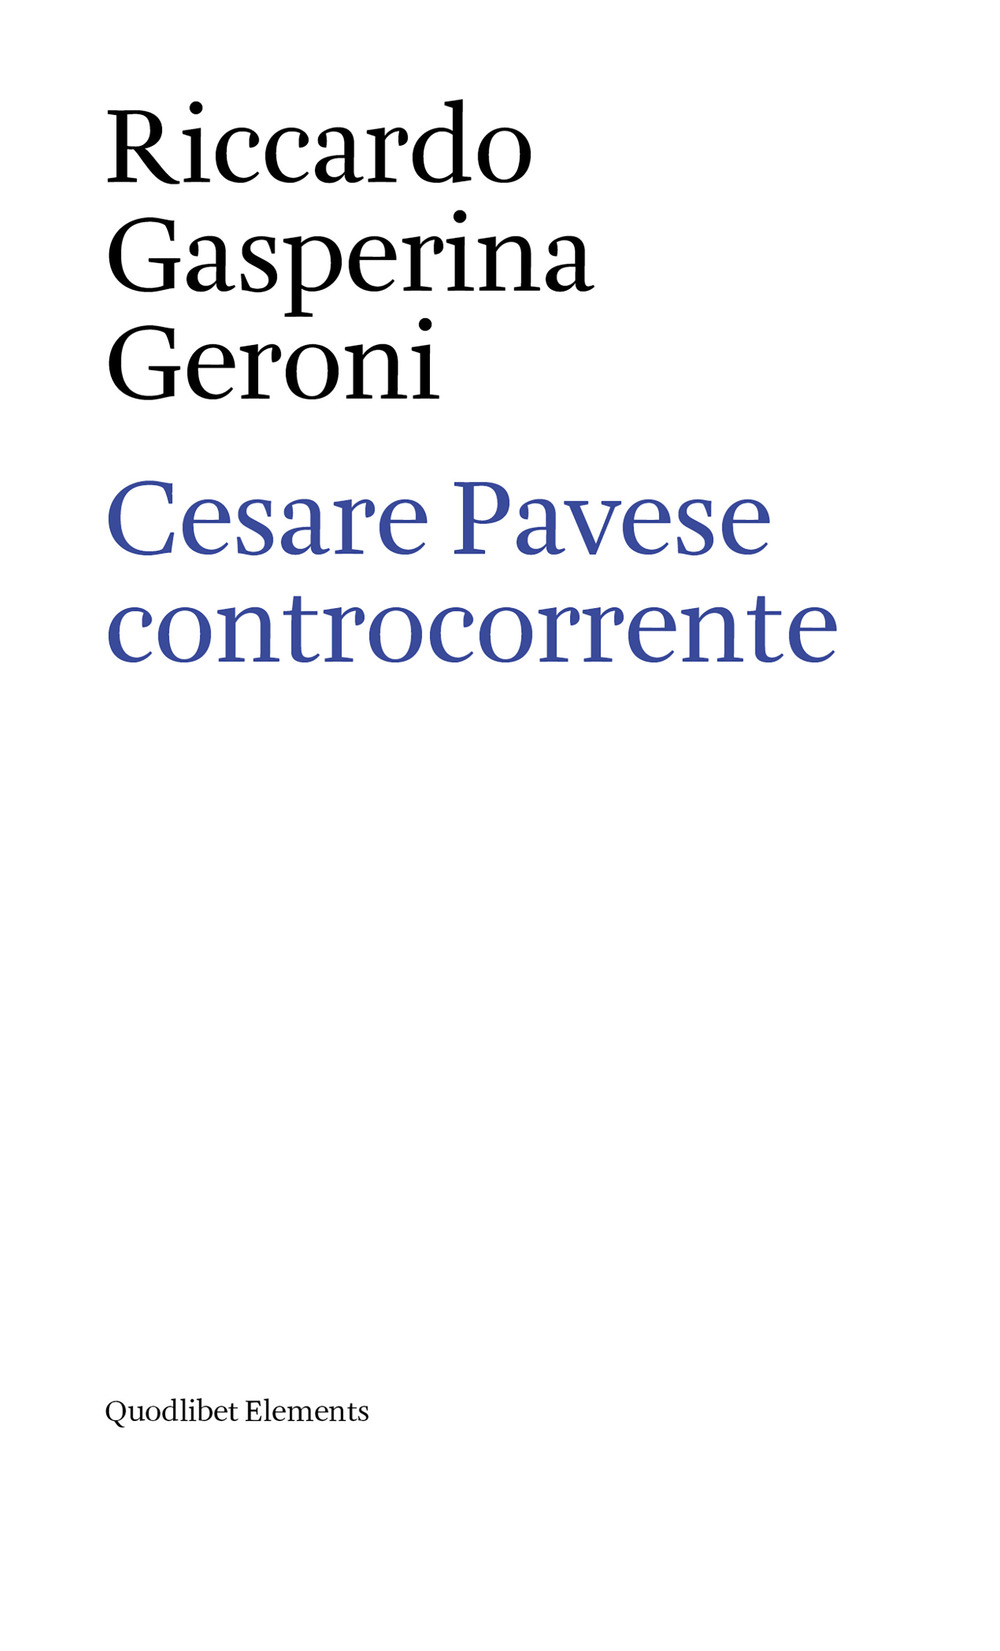 CESARE PAVESE CONTROCORRENTE - 9788822904355